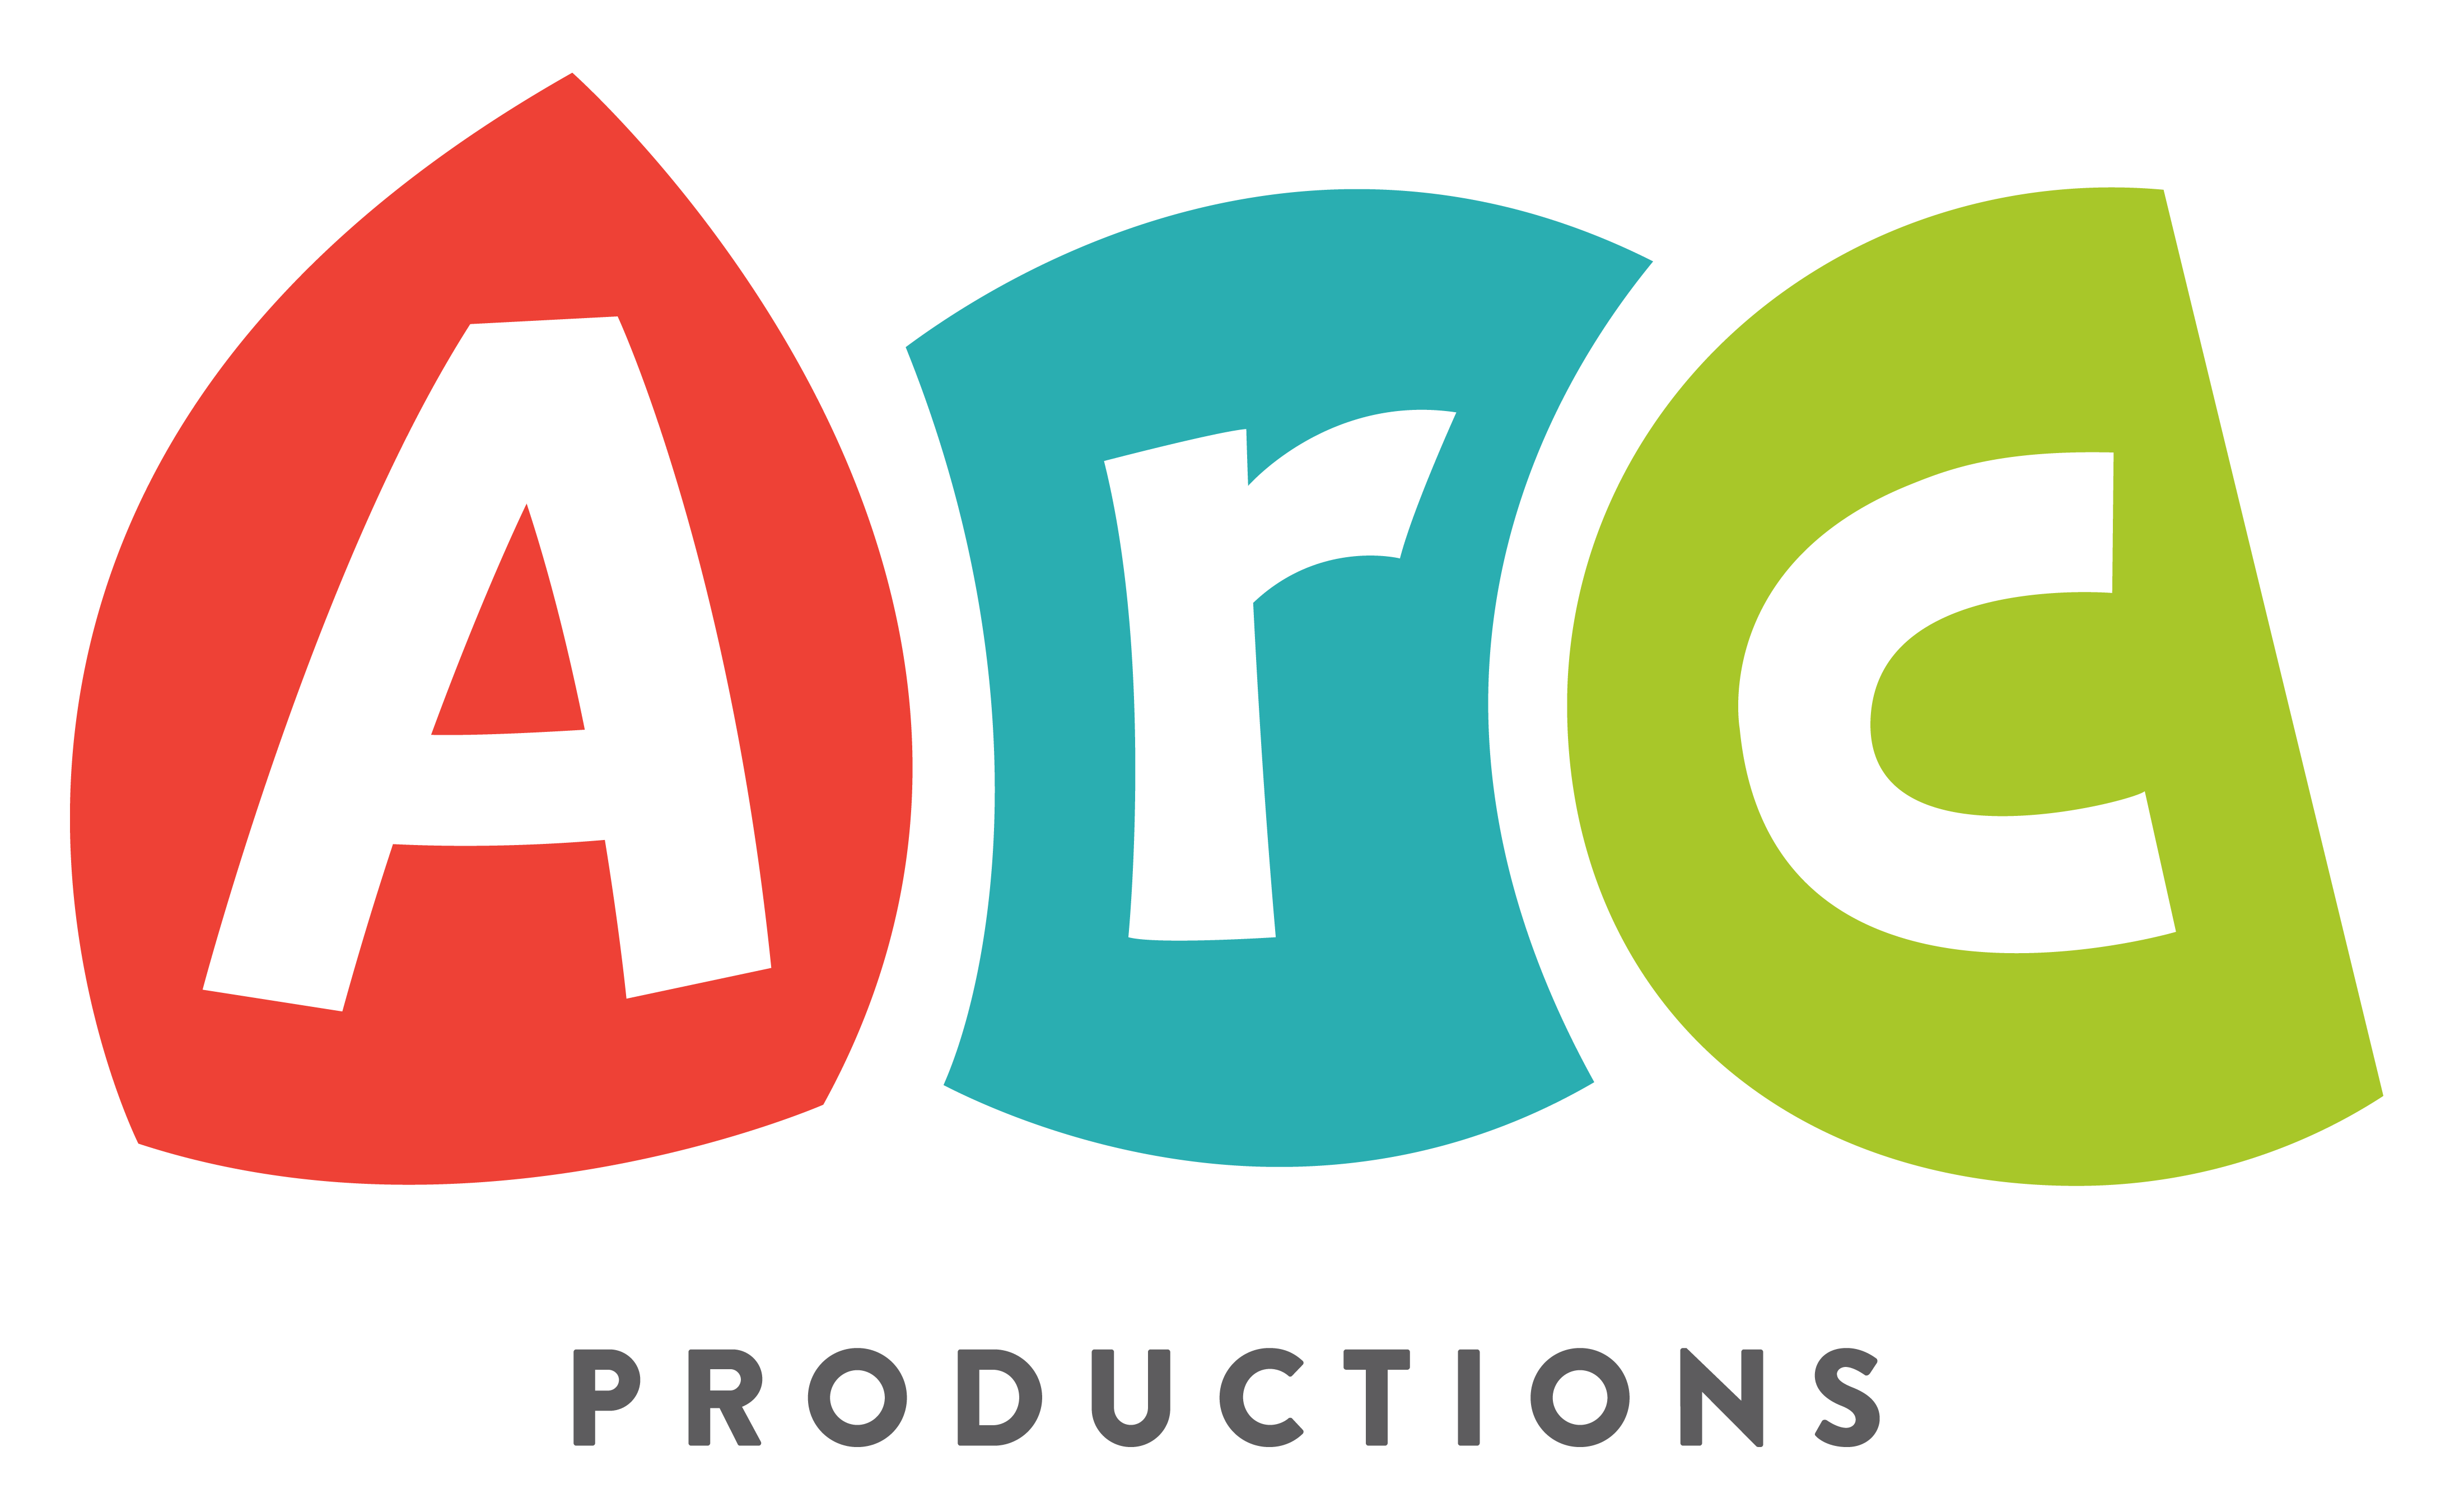 Arc Productions logo, logotype